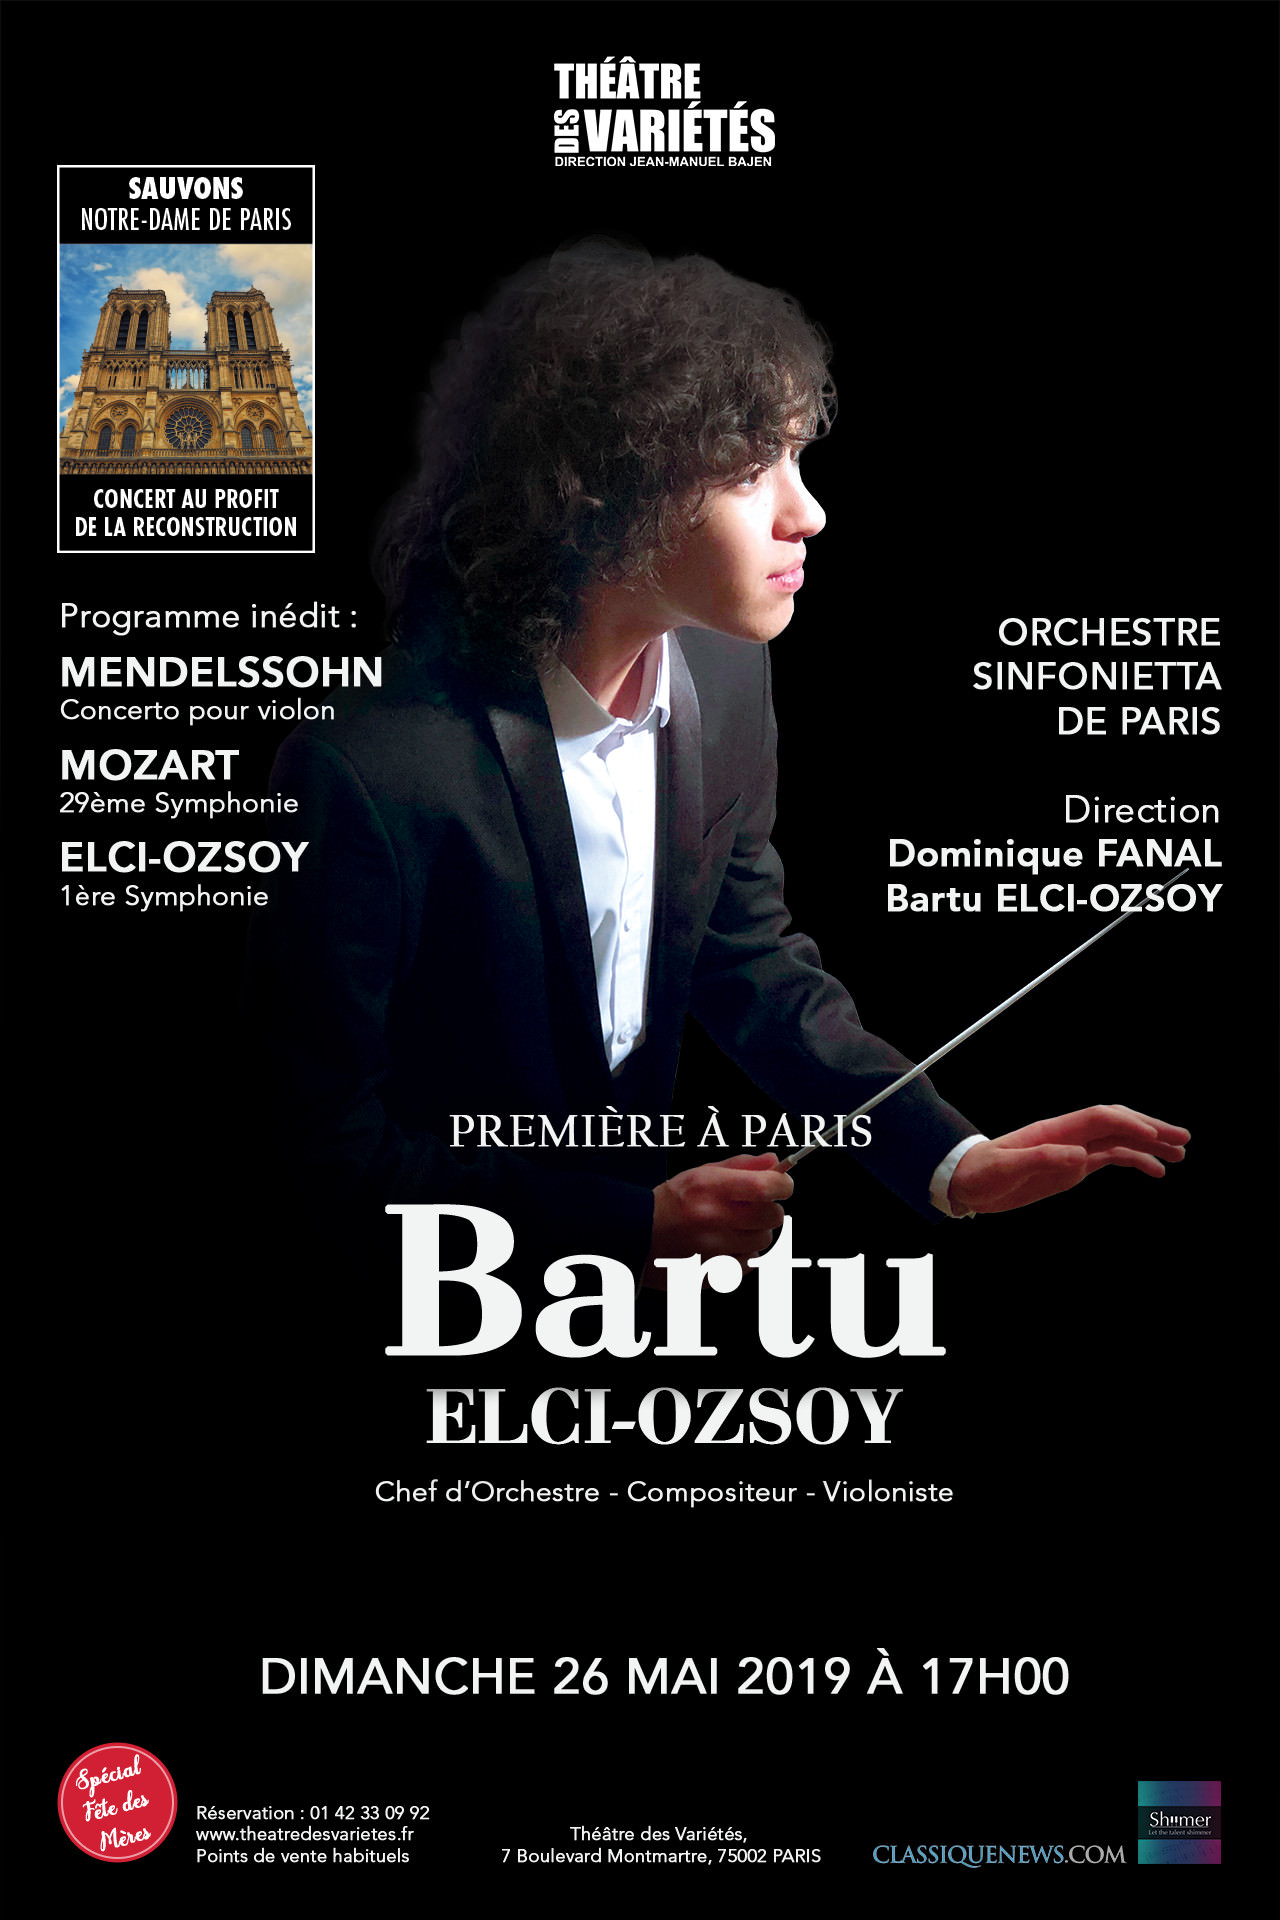 Bartu Elci-Ozsoy à Paris [FINI] - Théâtre des Variétés